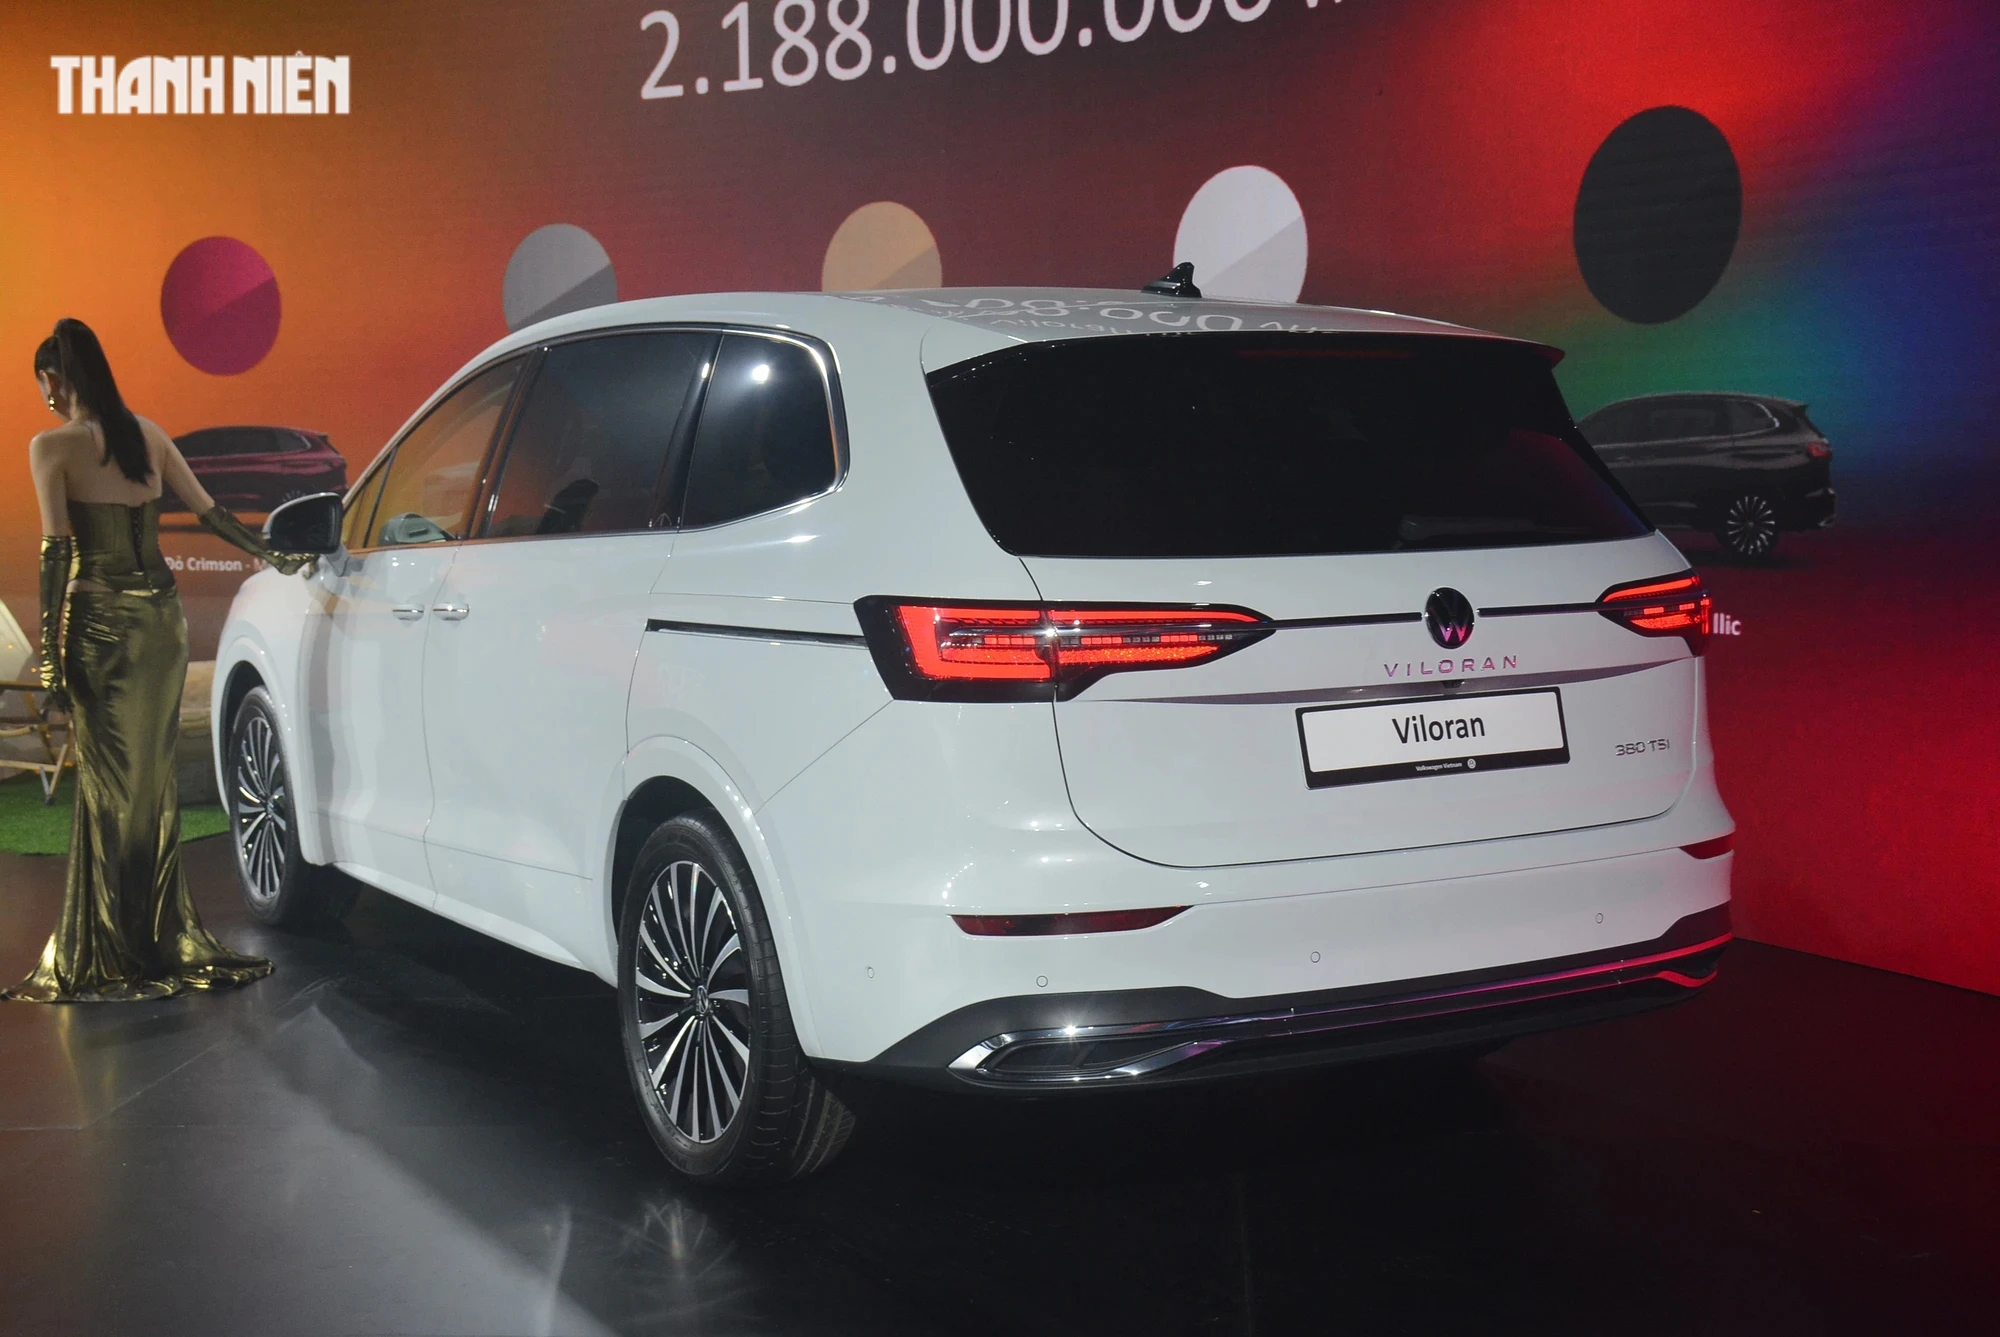 Giá từ 1,989 tỉ đồng, Volkswagen Viloran có gì hấp dẫn khách Việt?- Ảnh 12.